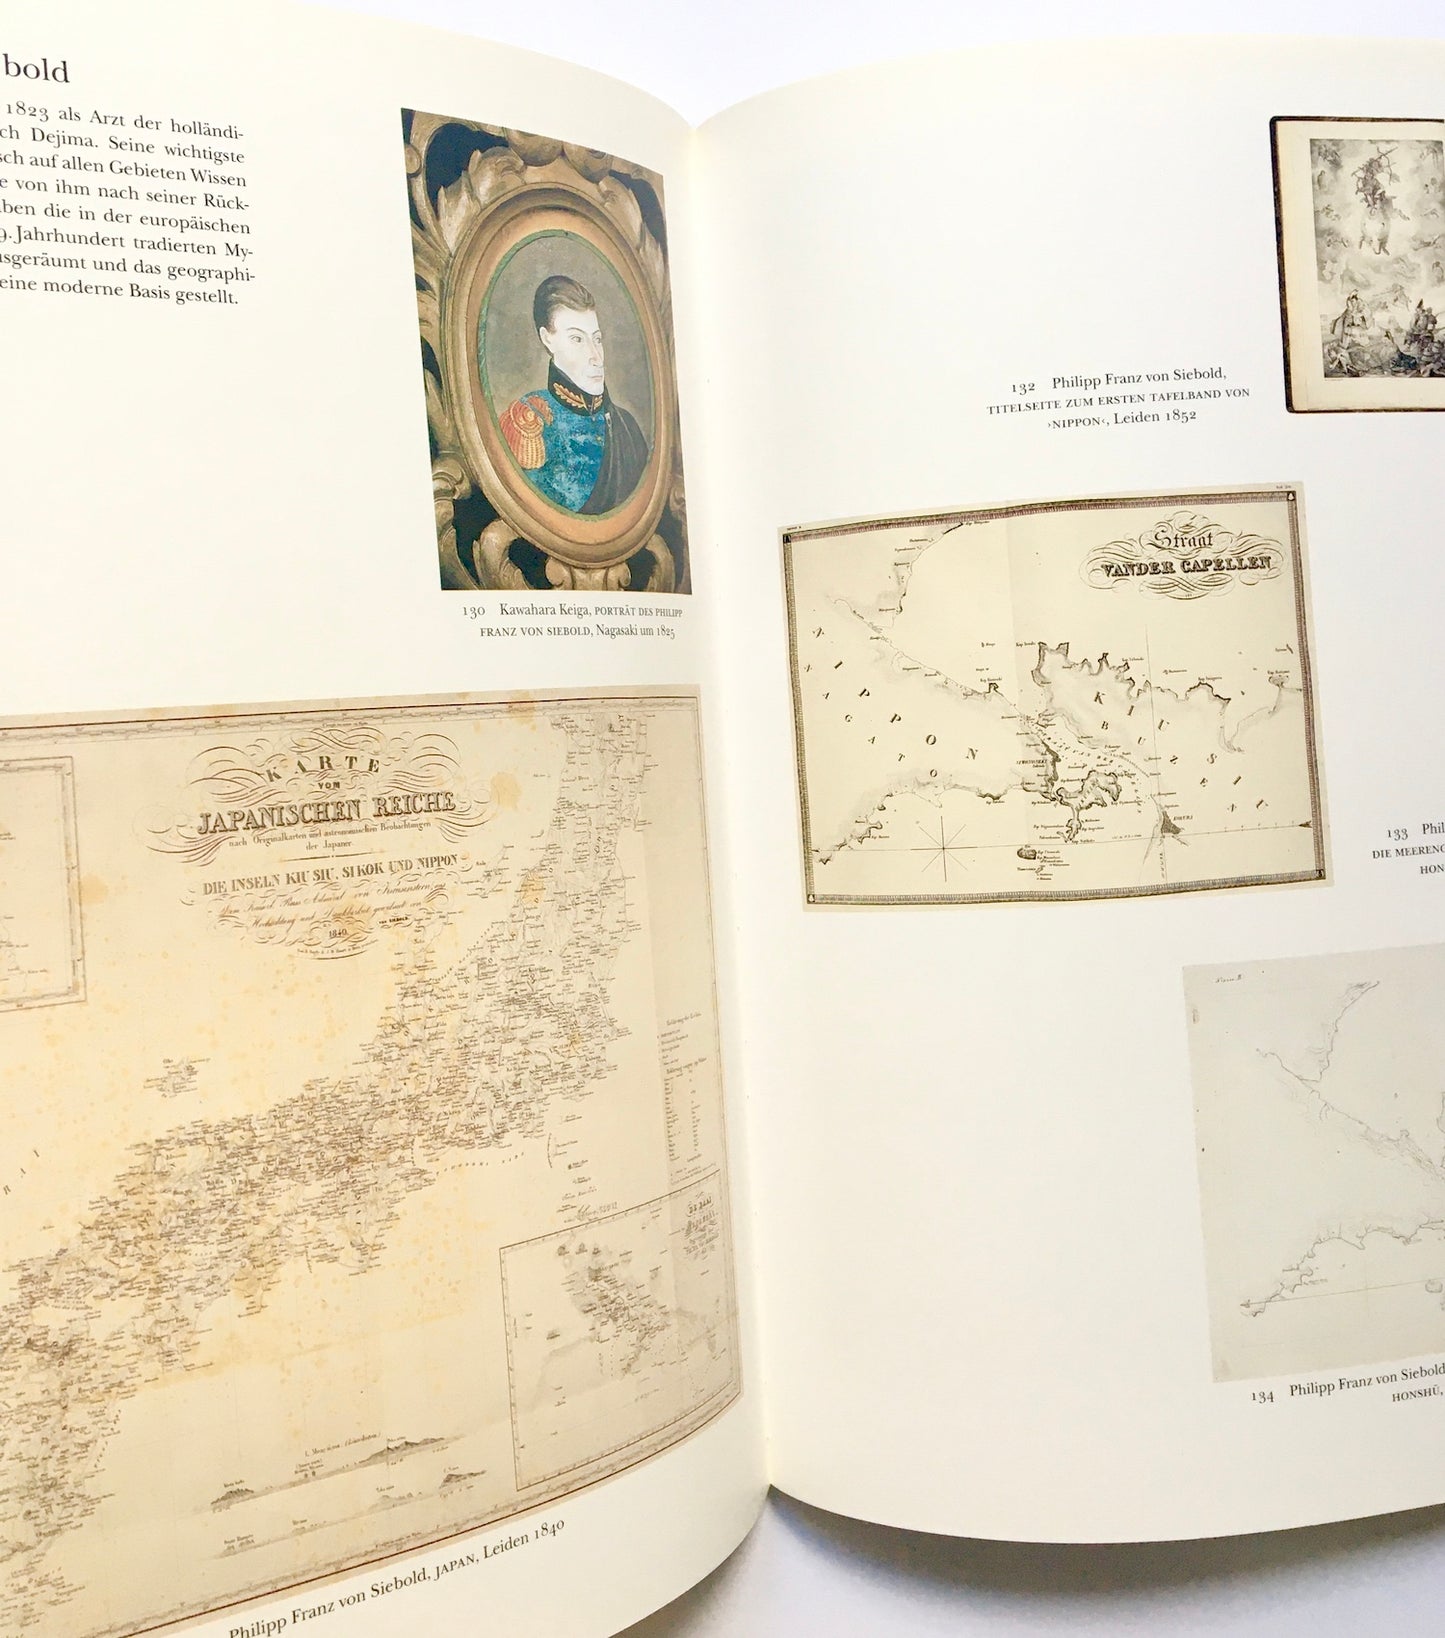 Japan - Mit den Augen des Westens gesehen. Gedruckte Europäische Landkarten vom frühen 16. bis zum 19. Jahrhundert